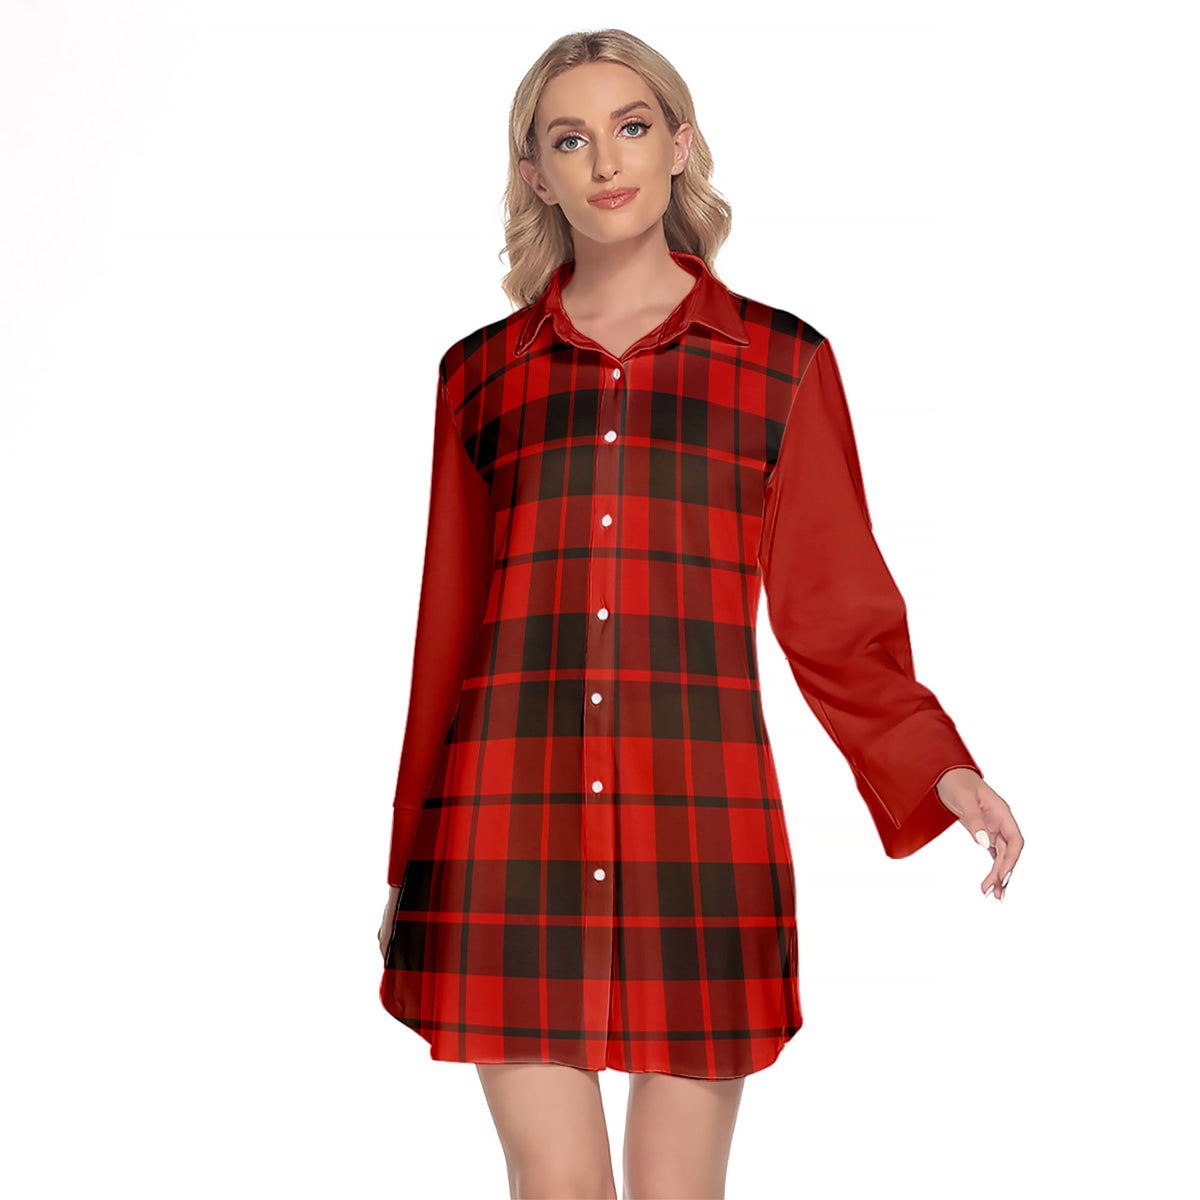 Hogg Tartan Women's Lapel Shirt Dress With Long Sleeve